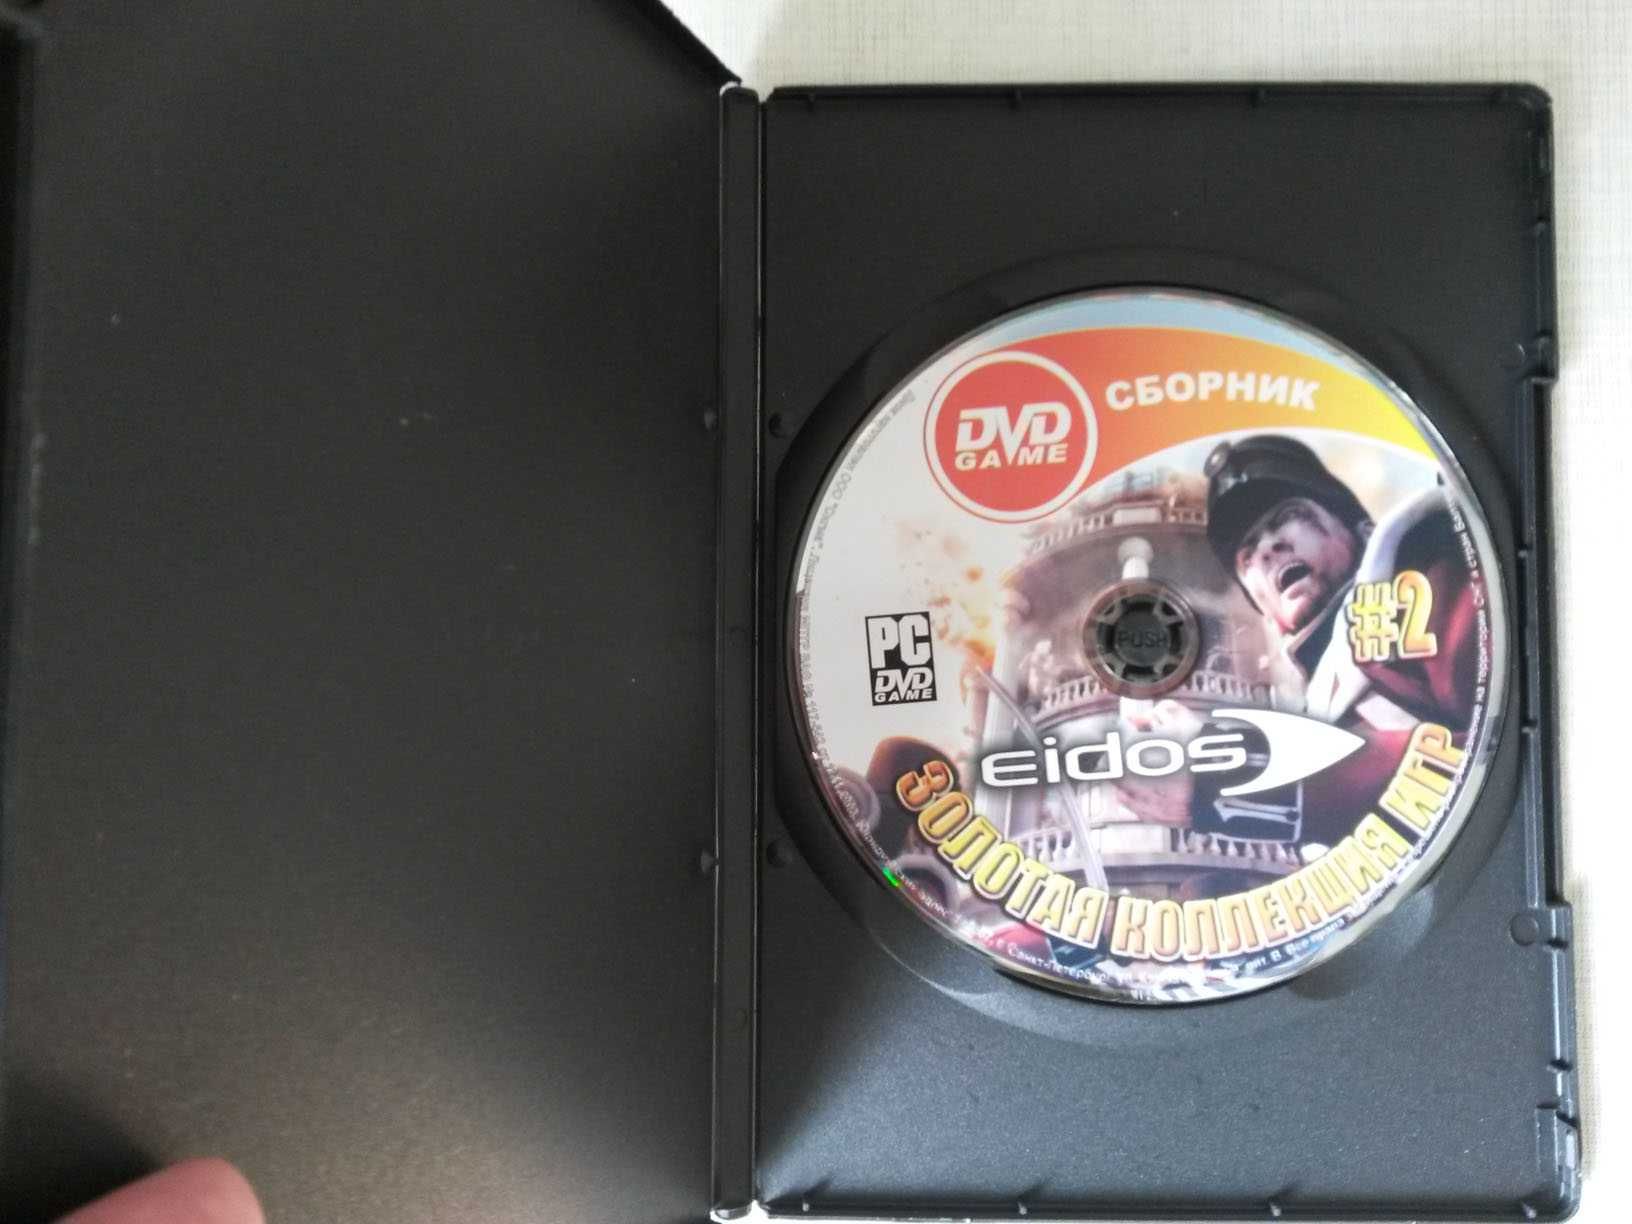 сборник игр для PC, студии Eidos (Deus Ex 1,2, футбол и др)